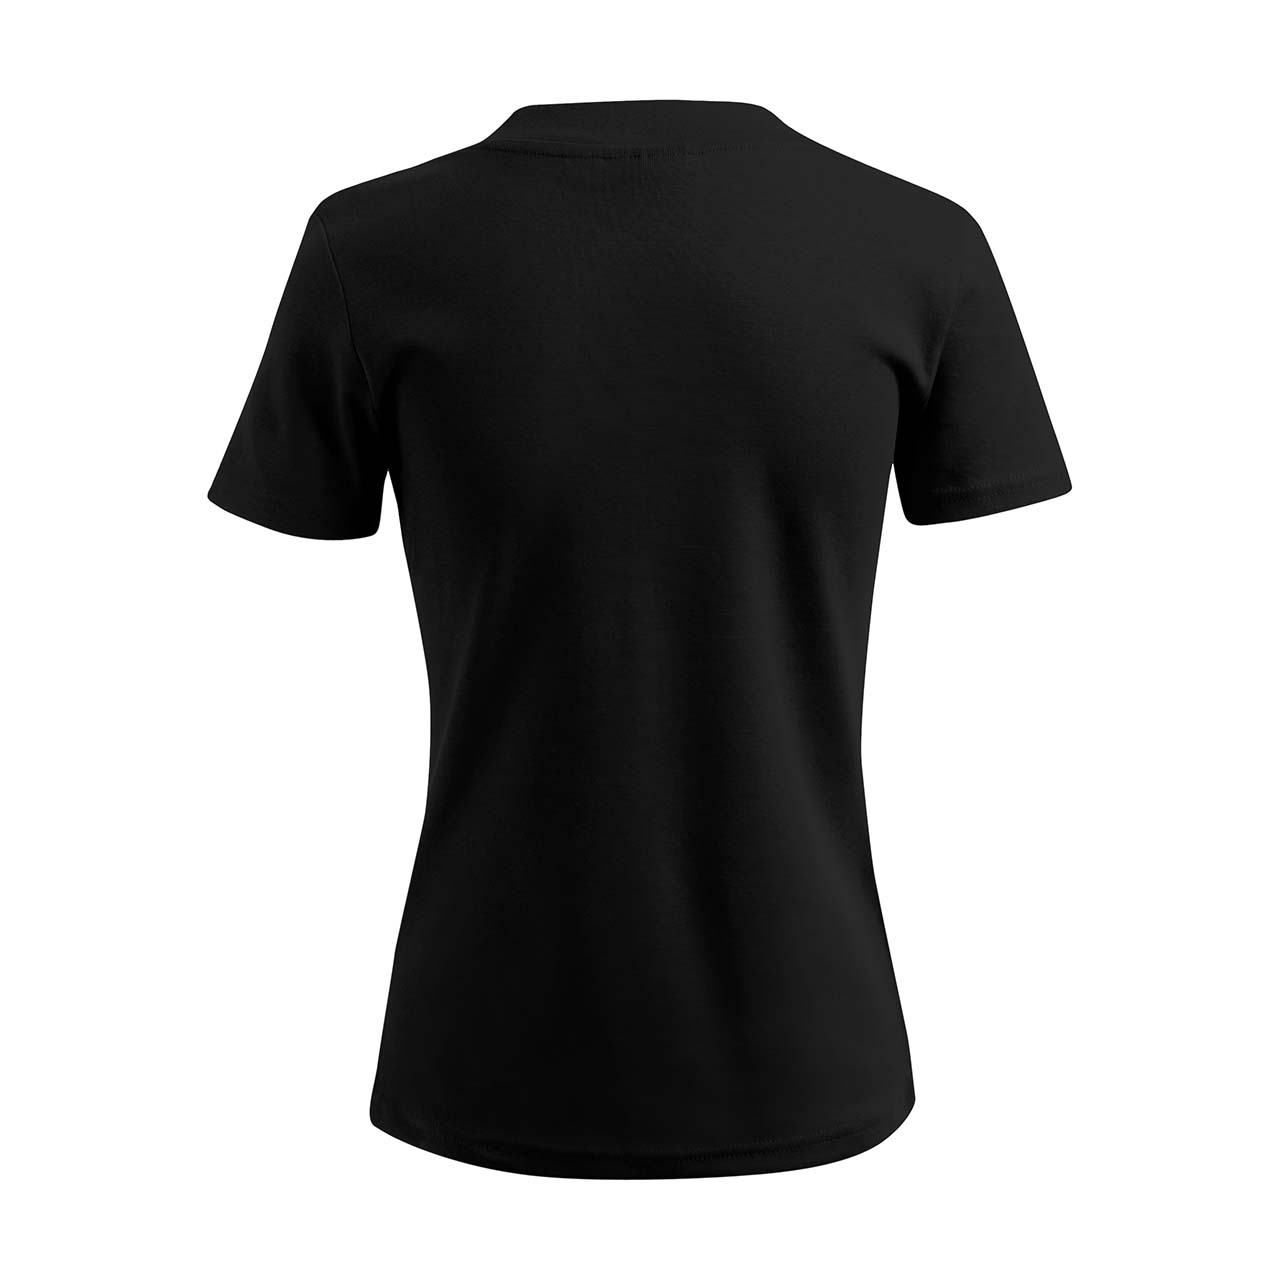 Damen T-Shirt mit V-Ausschnitt - Kölsche Liebe - Strass